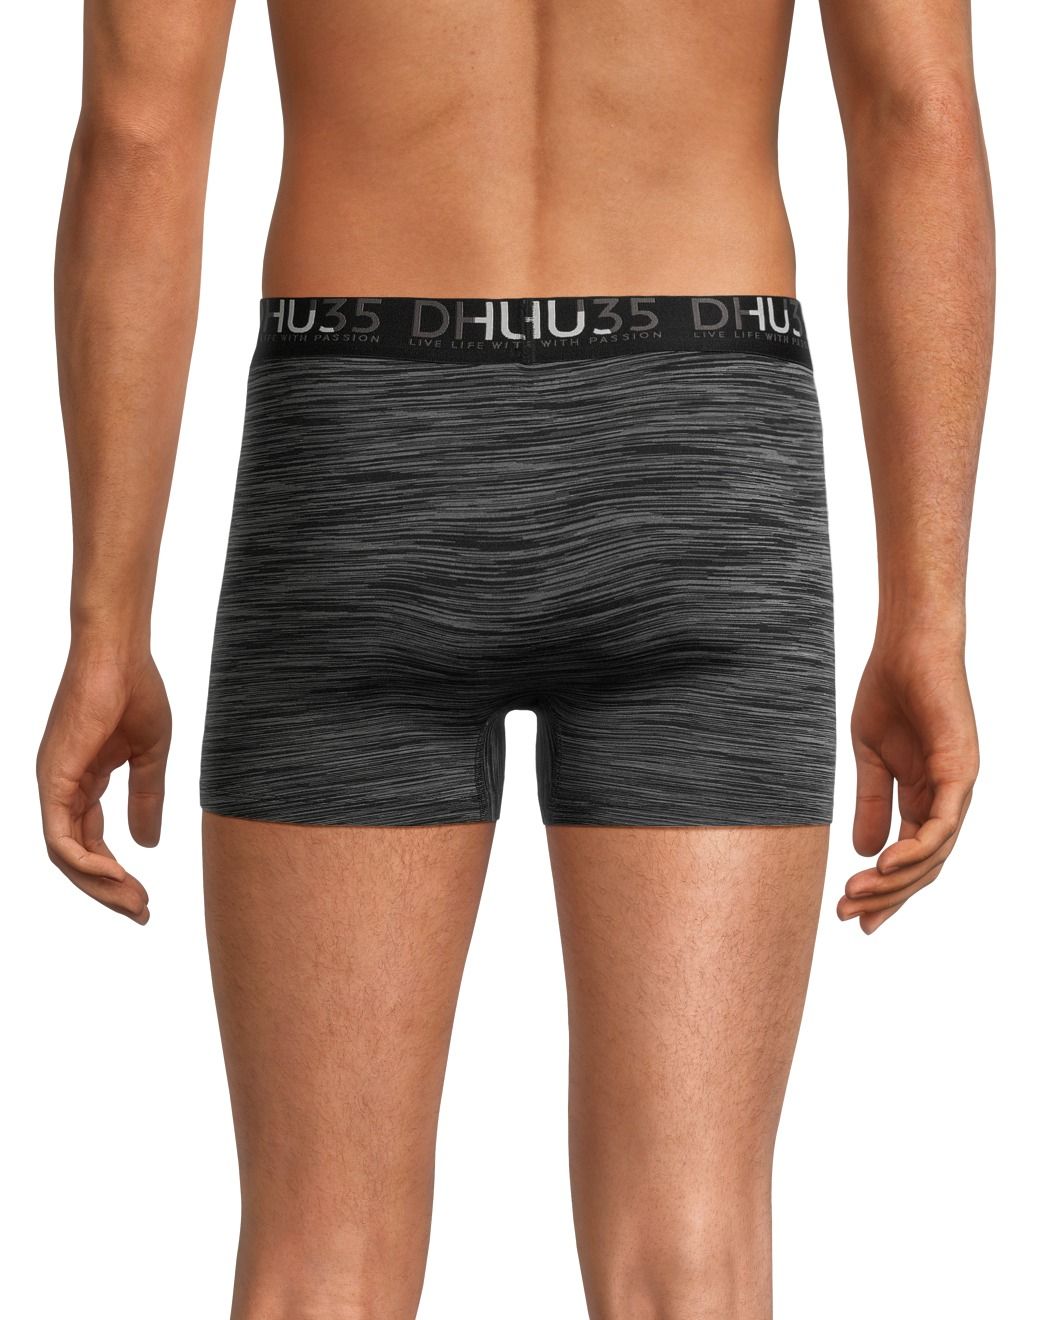 Belton Full Cut Briefs/ Men's Underwear (2 Pack) (50,000 Bags) in NC